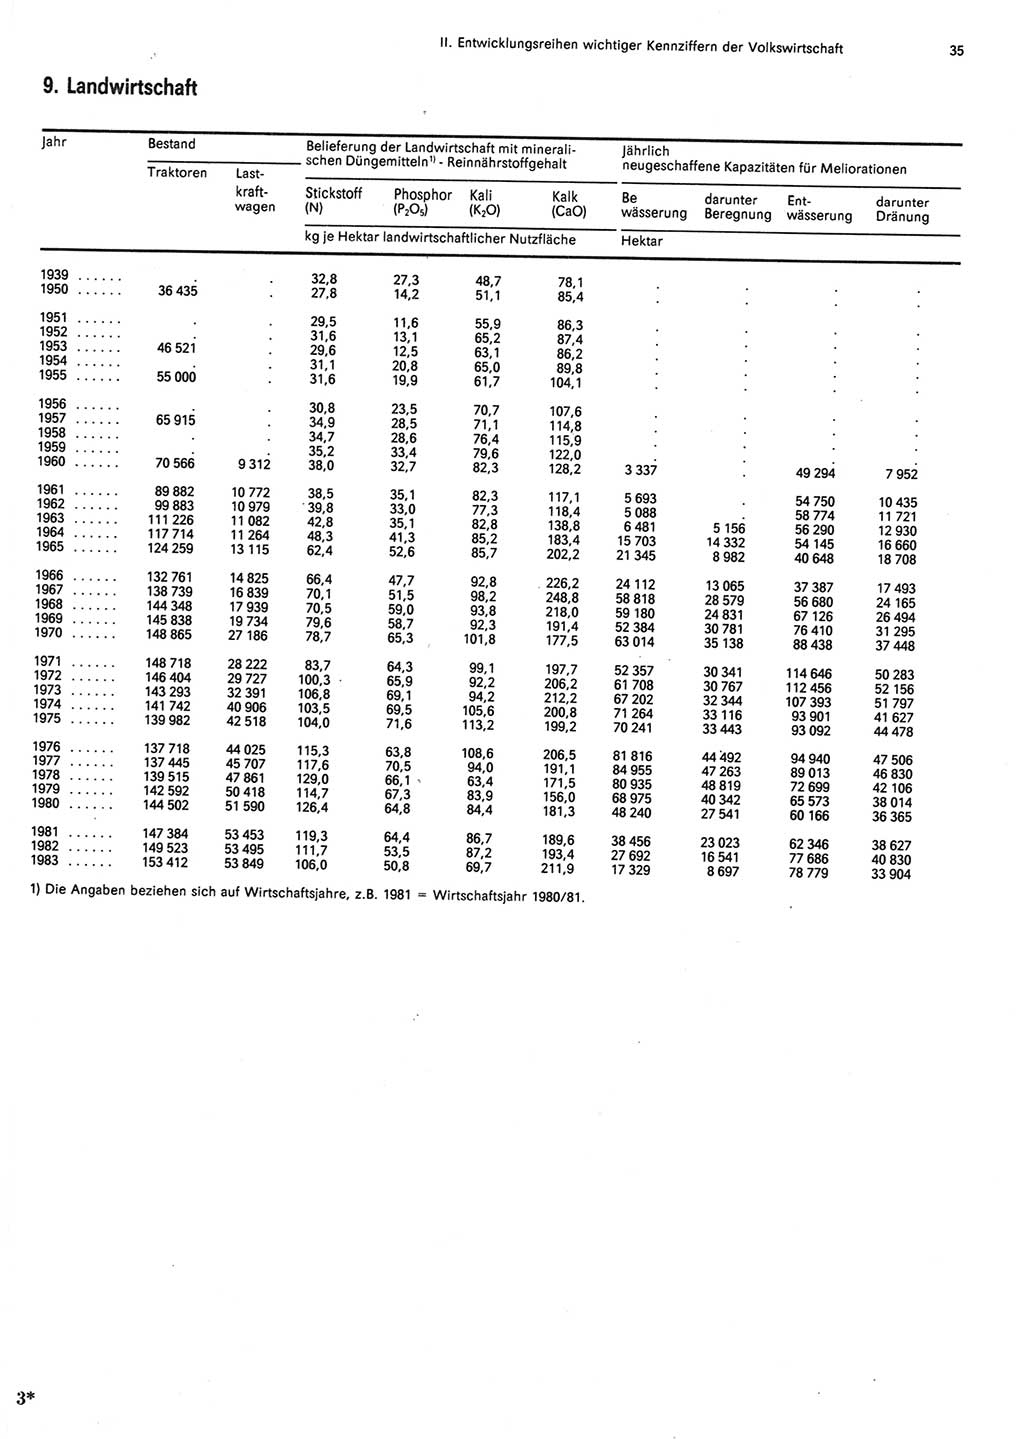 Statistisches Jahrbuch der Deutschen Demokratischen Republik (DDR) 1984, Seite 35 (Stat. Jb. DDR 1984, S. 35)